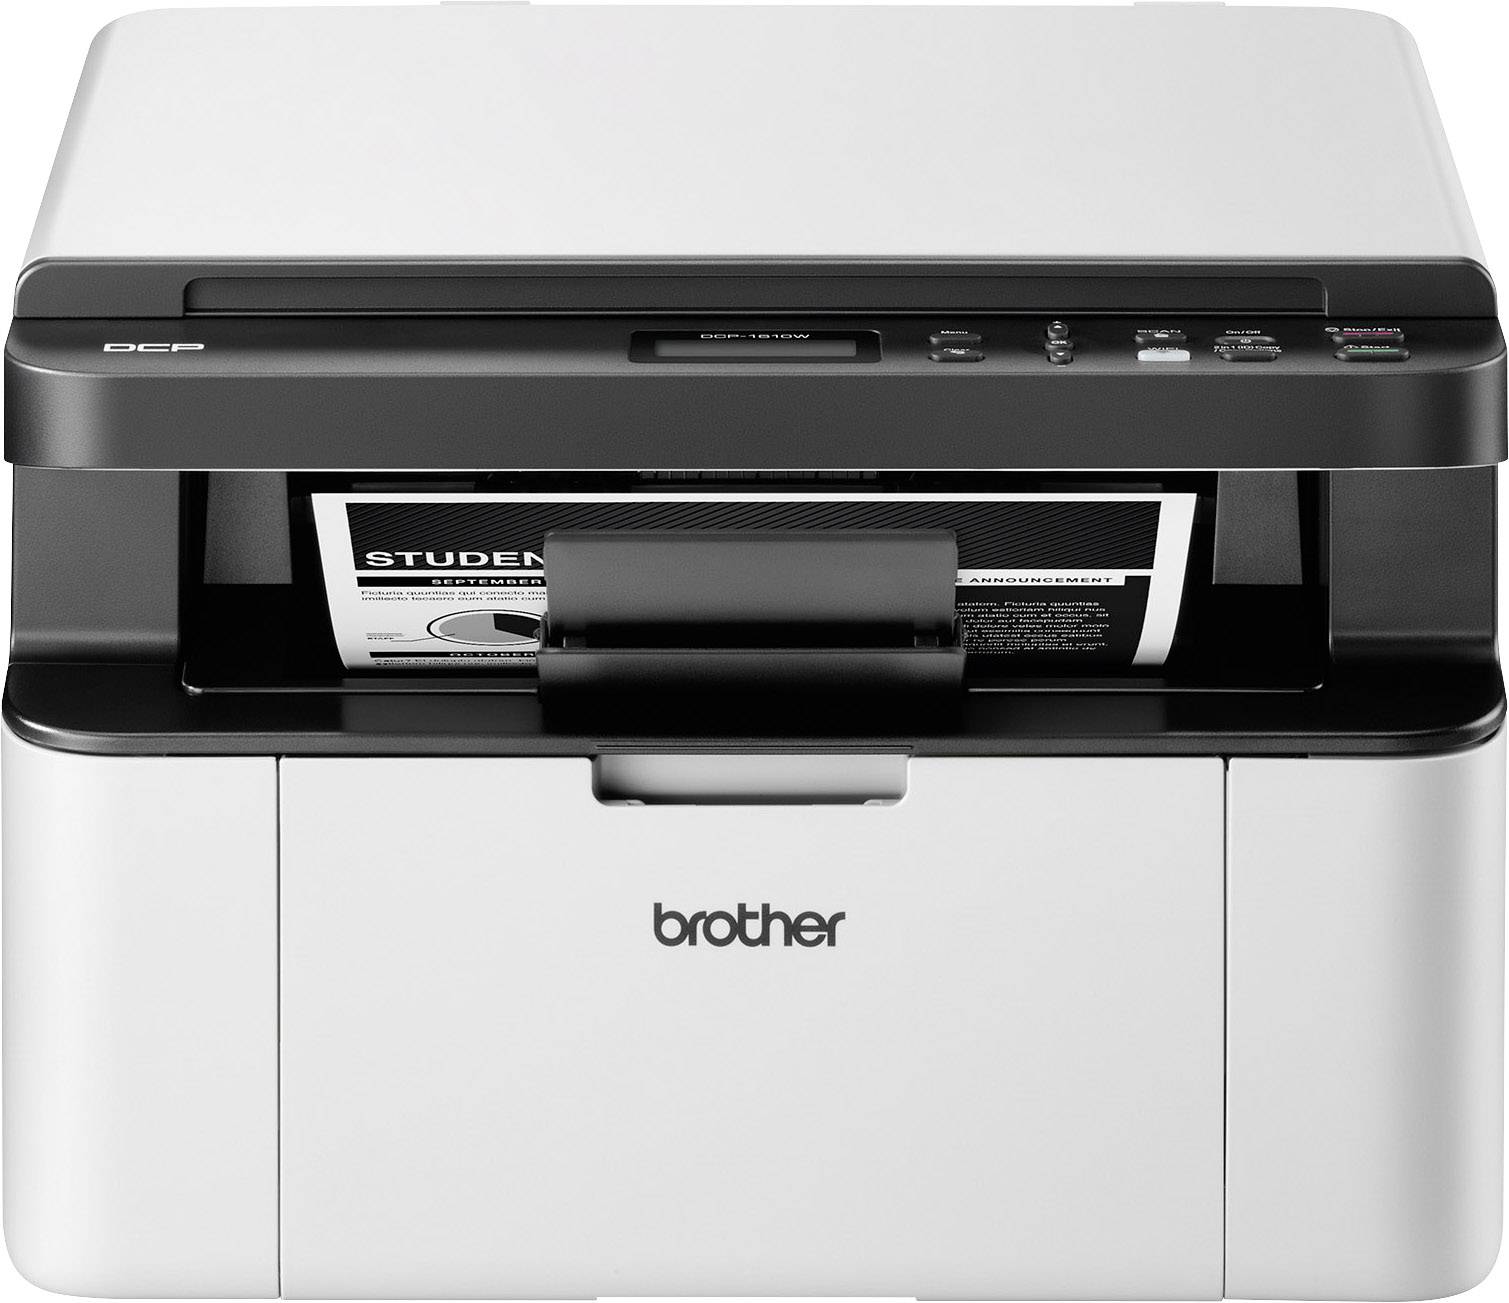 Brother DCP-1610W Schwarzweiß Scanner, A4 Multifunktionsdrucker Drucker, Laser kaufen Kopierer USB, WLAN